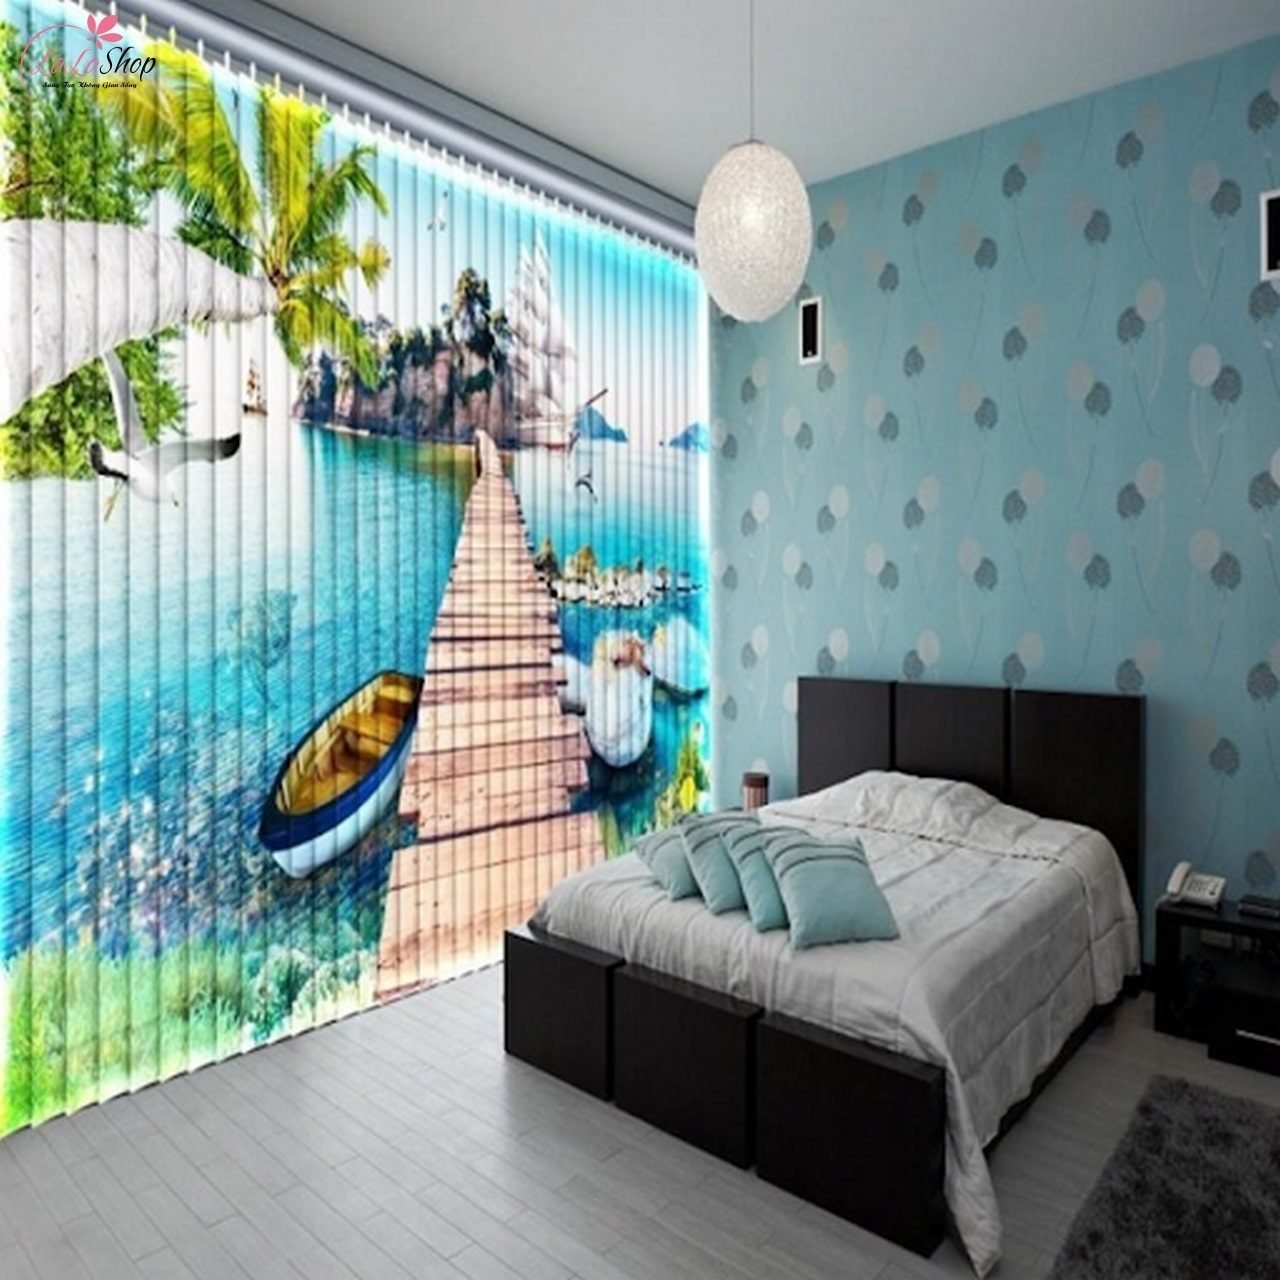 Rèm 3D - Mẫu rèm cửa tranh 3D thuyền và biển phù hợp cho phòng ngủ